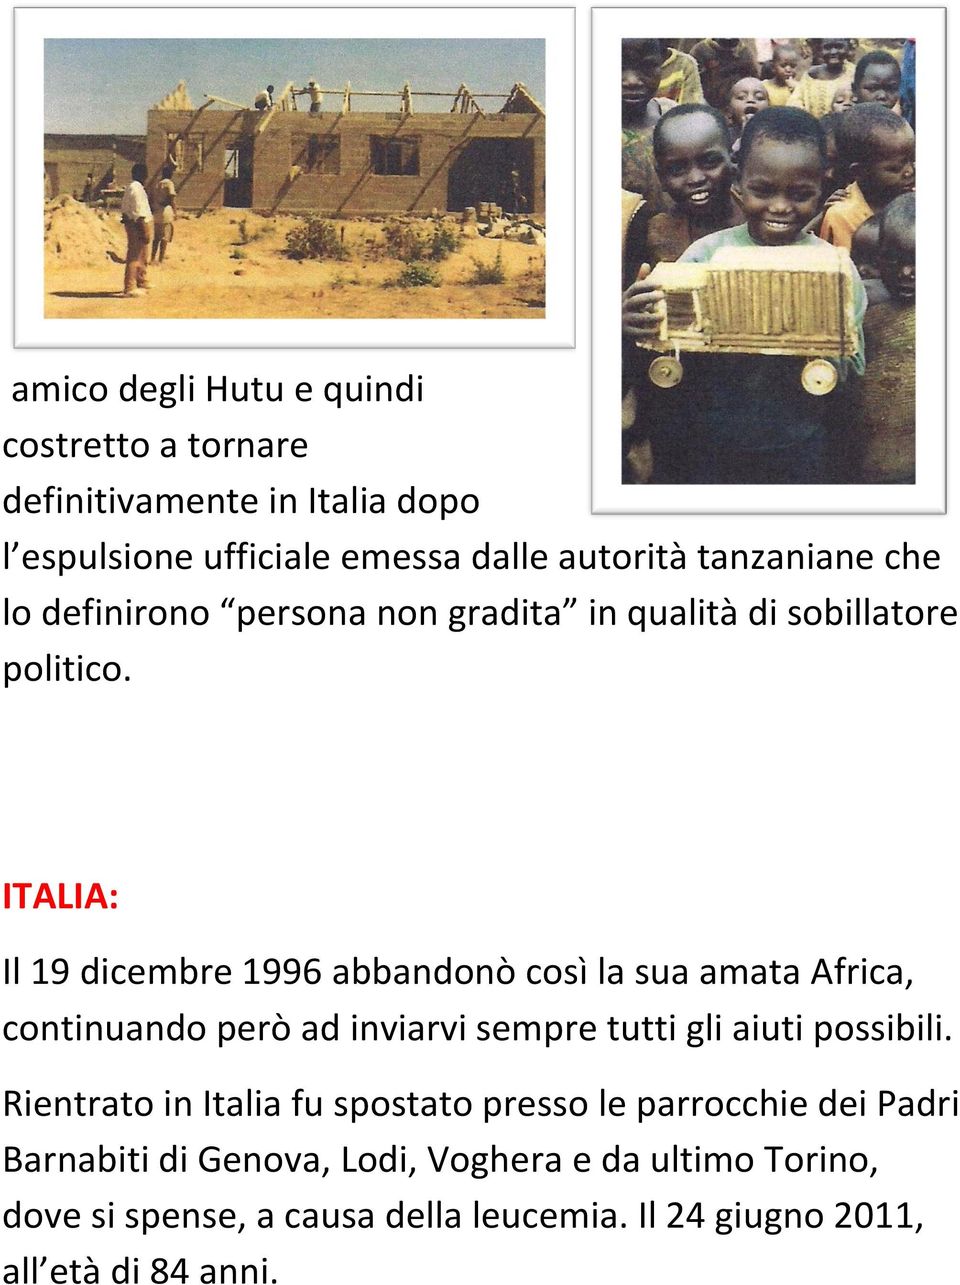 ITALIA: Il 19 dicembre 1996 abbandonò così la sua amata Africa, continuando però ad inviarvi sempre tutti gli aiuti possibili.